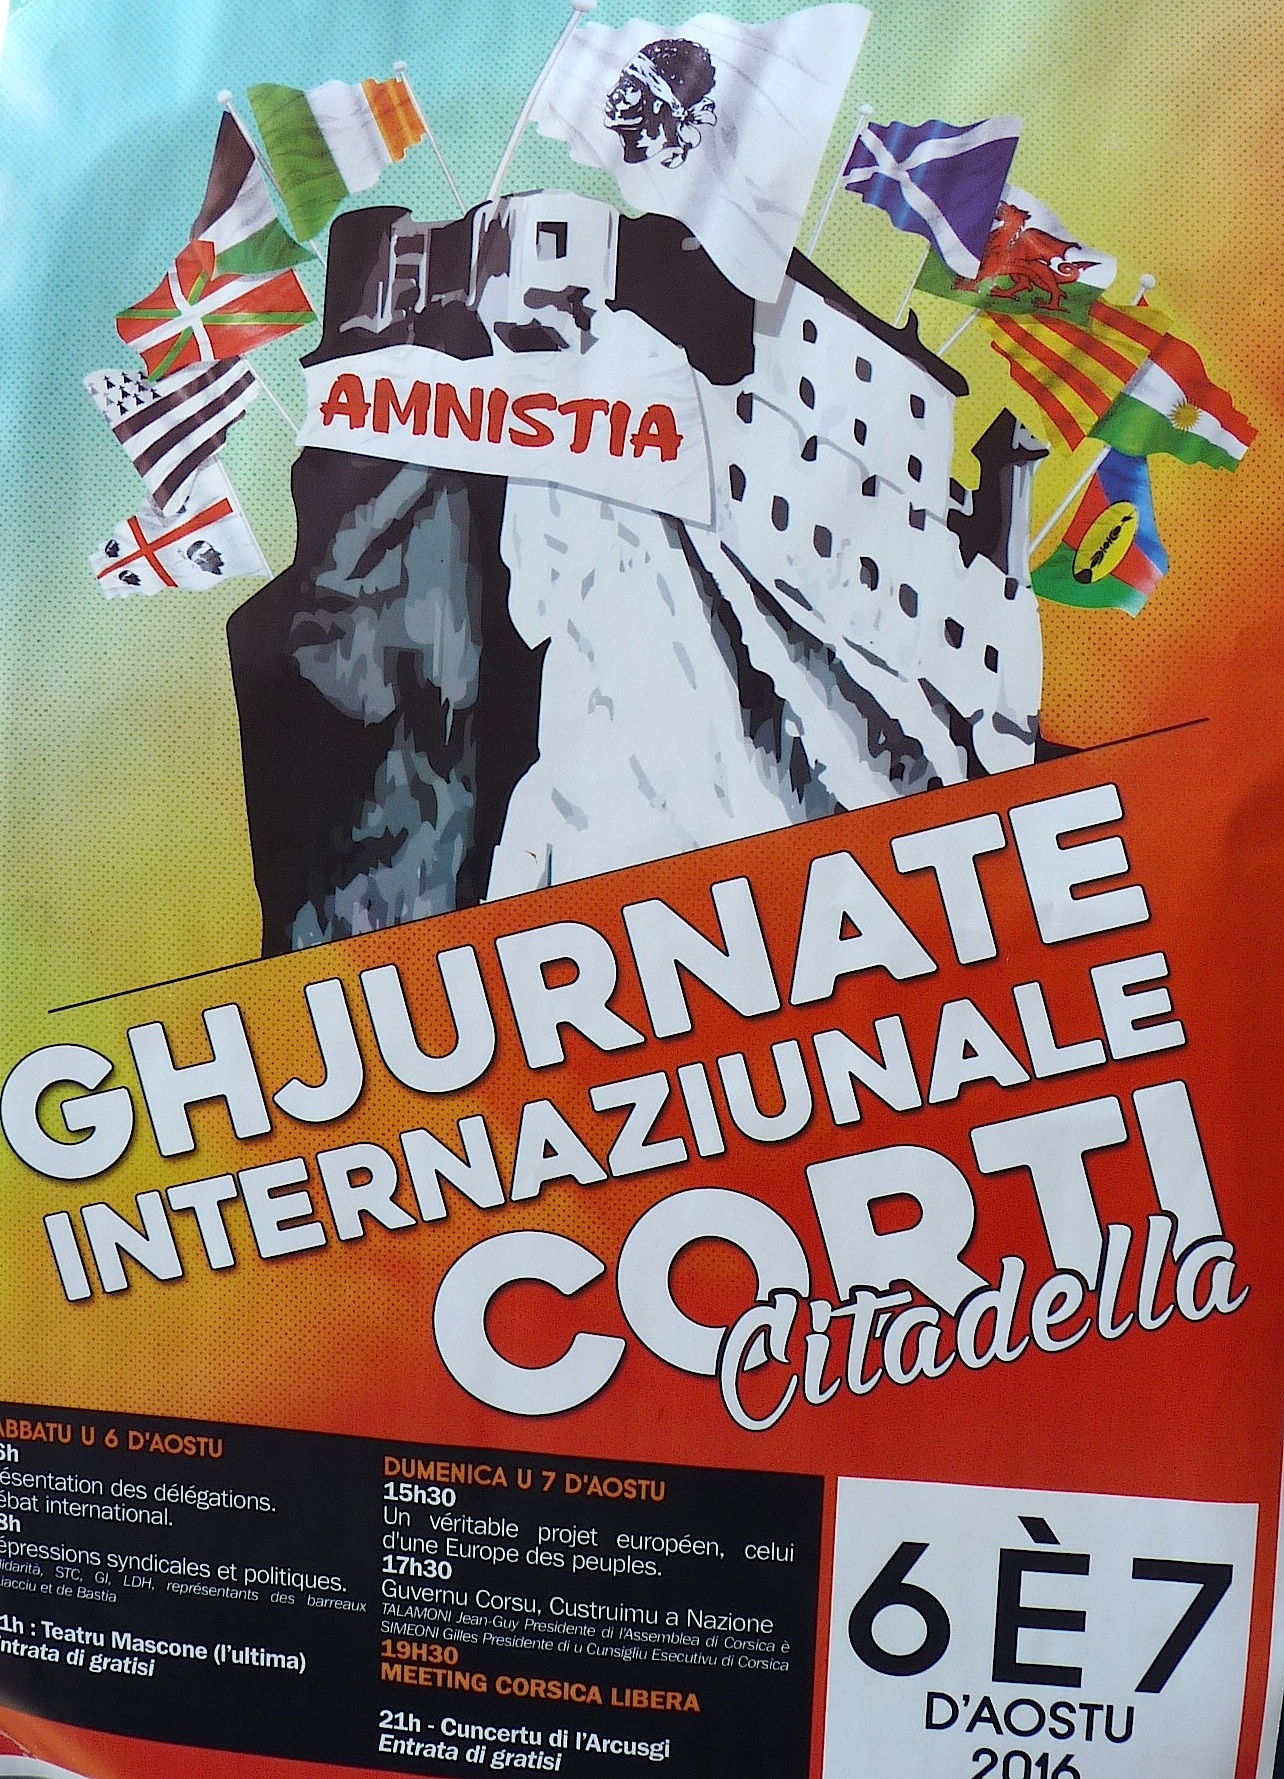 Trentacinquesimi Ghjurnate Internaziunale di Corti : Amnistie, répressions syndicales et politiques… Et avenir